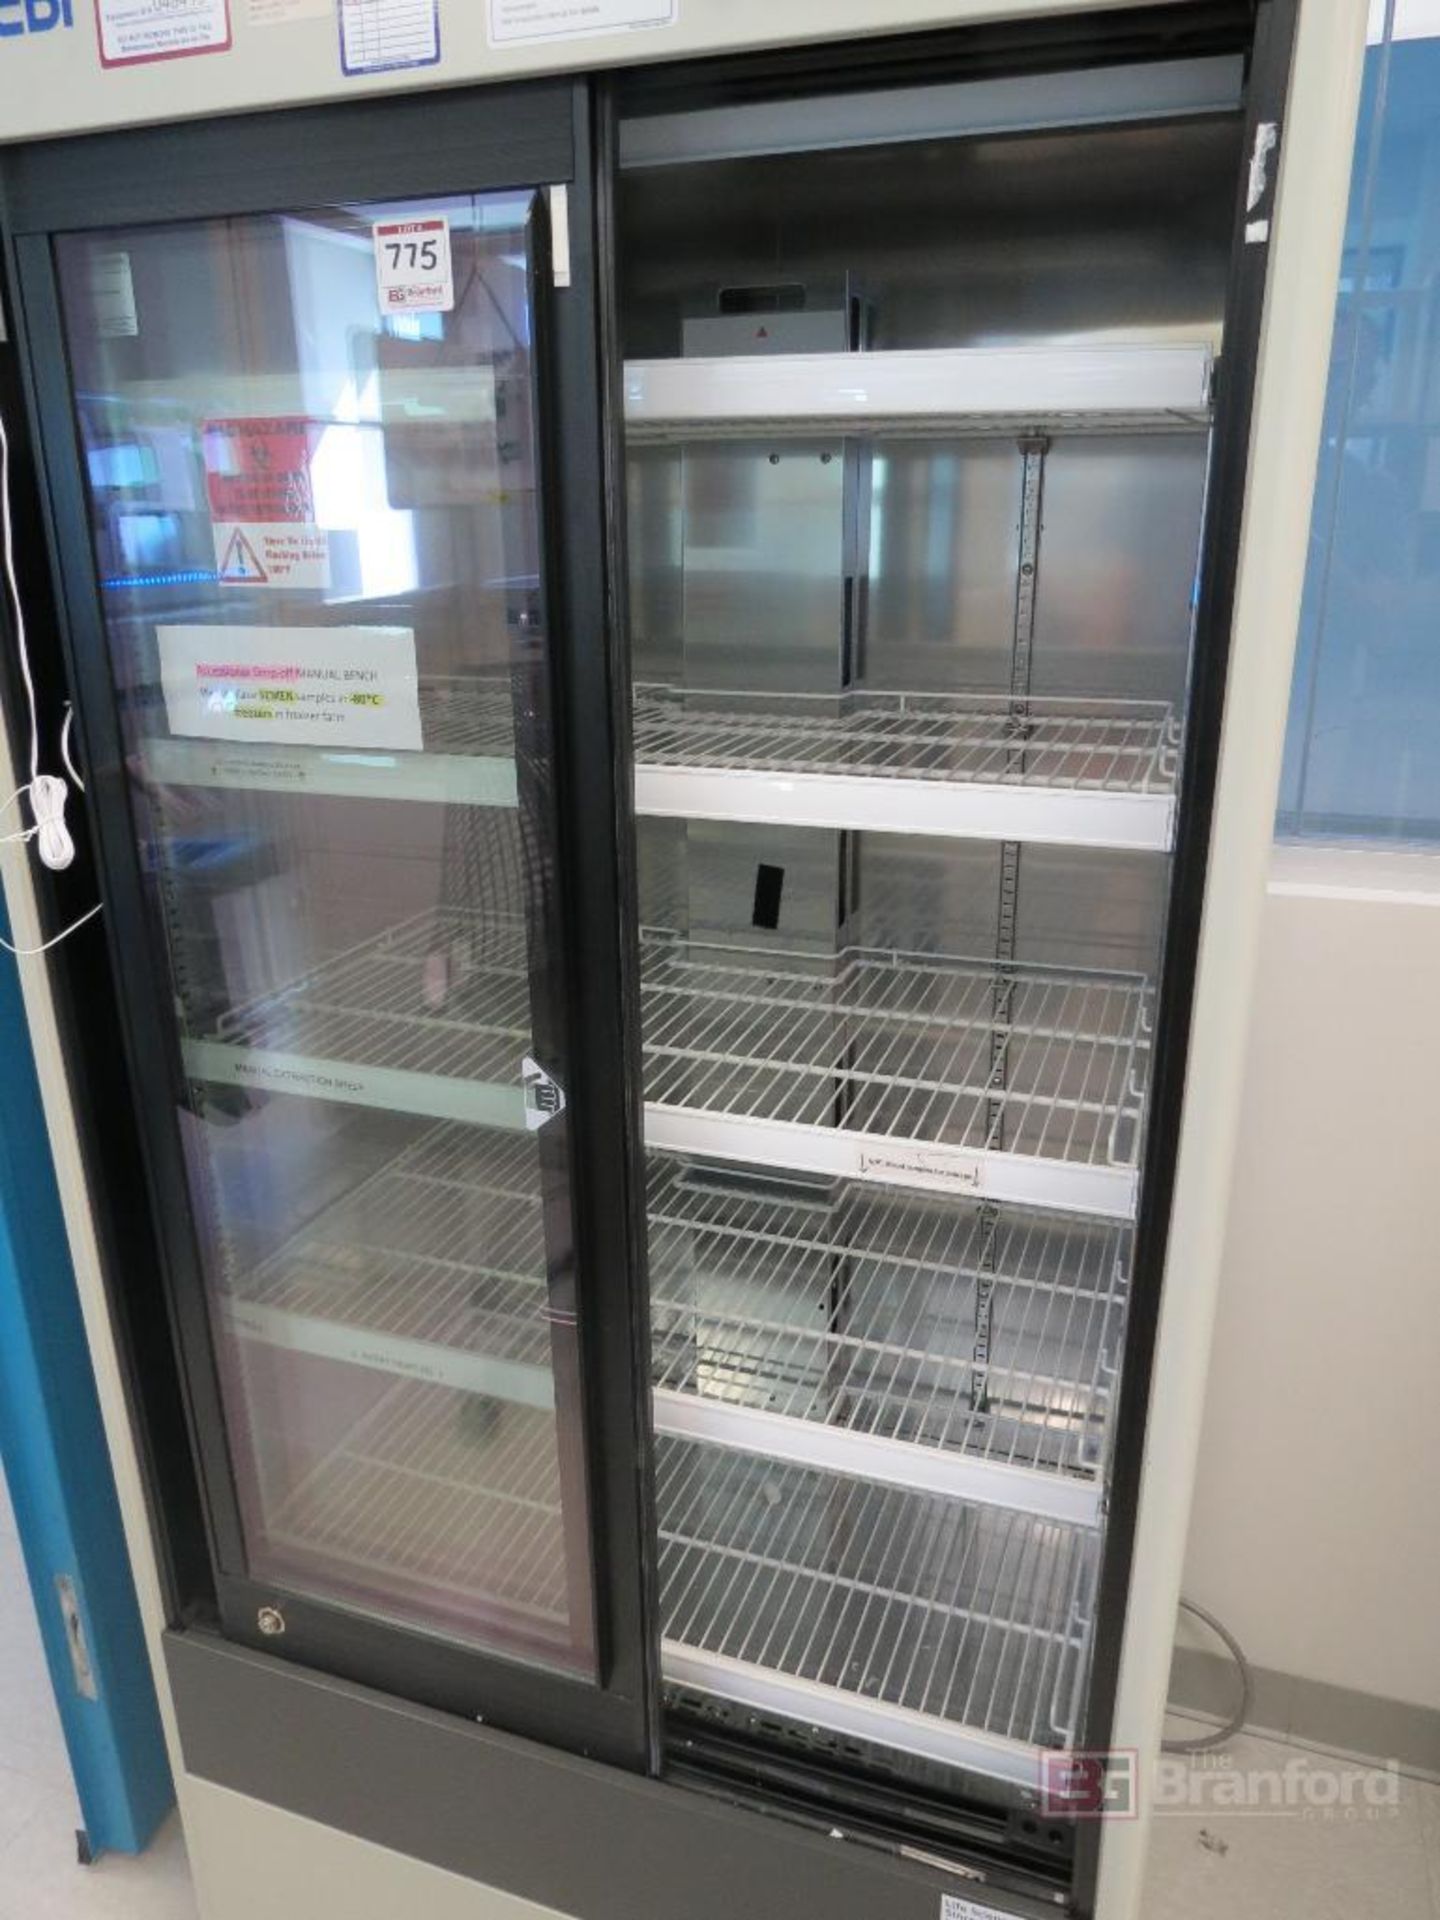 PHCbi MPR-514-PA Sliding Glass Door Pharmaceutical Refrigerator - Image 2 of 4